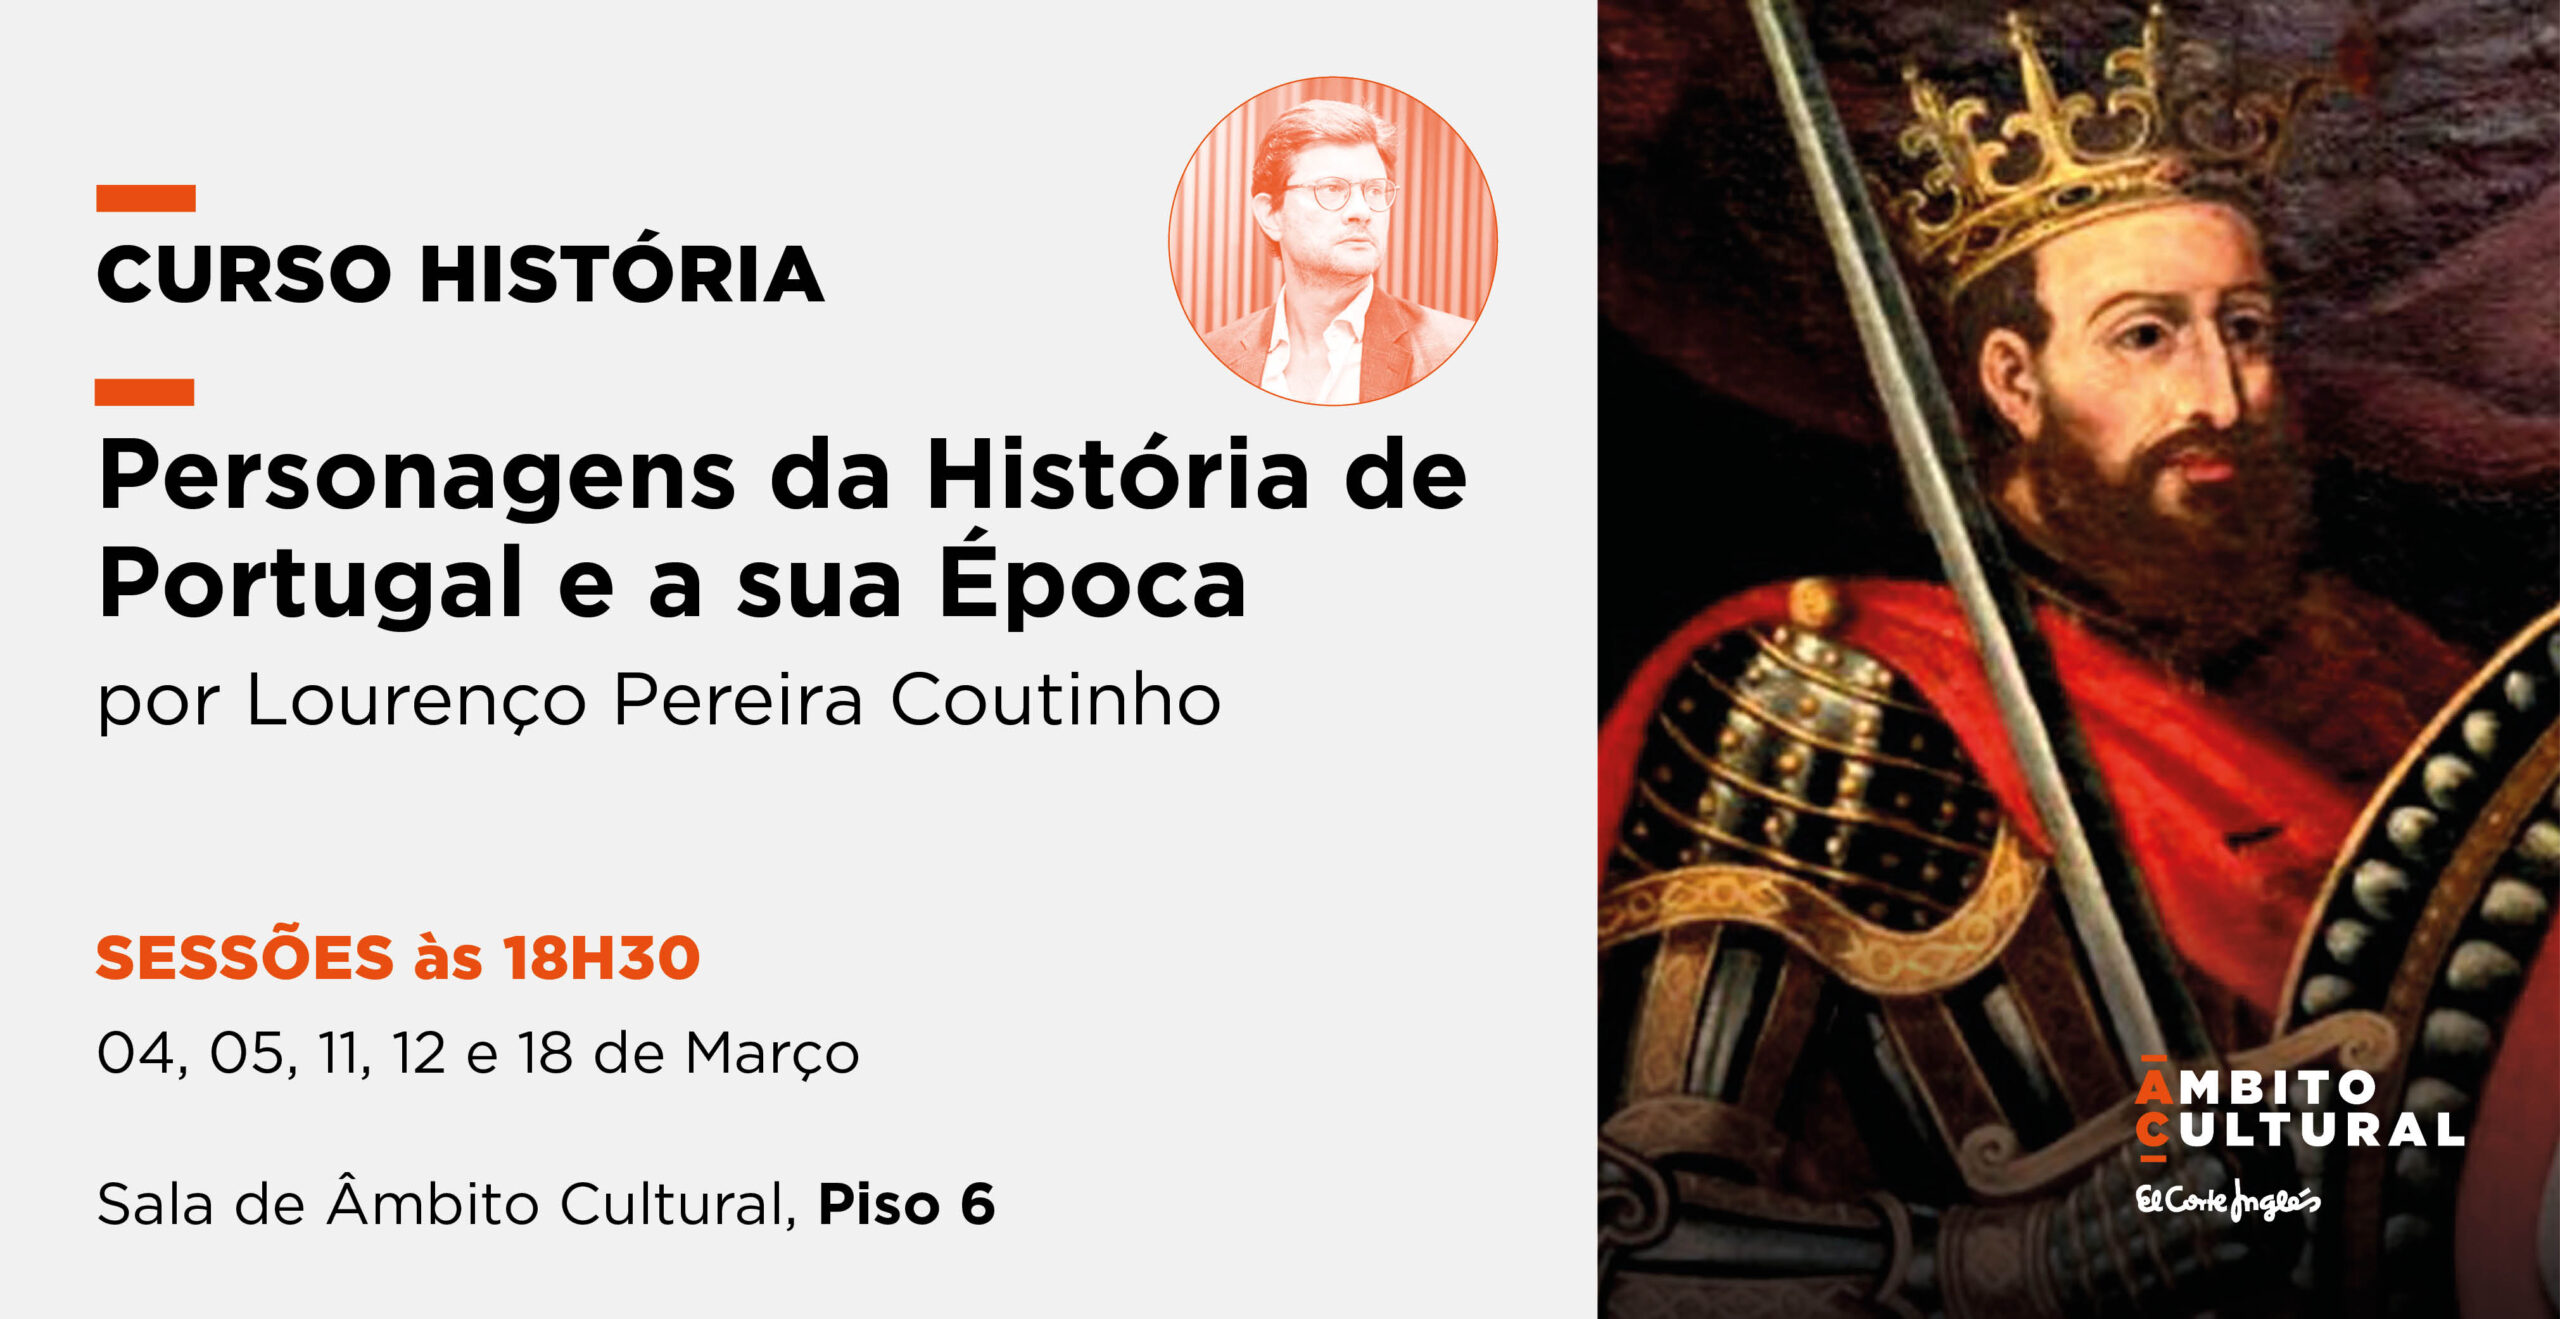 Curso “Personagens da História de Portugal e a sua Época” por Lourenço Pereira Coutinho